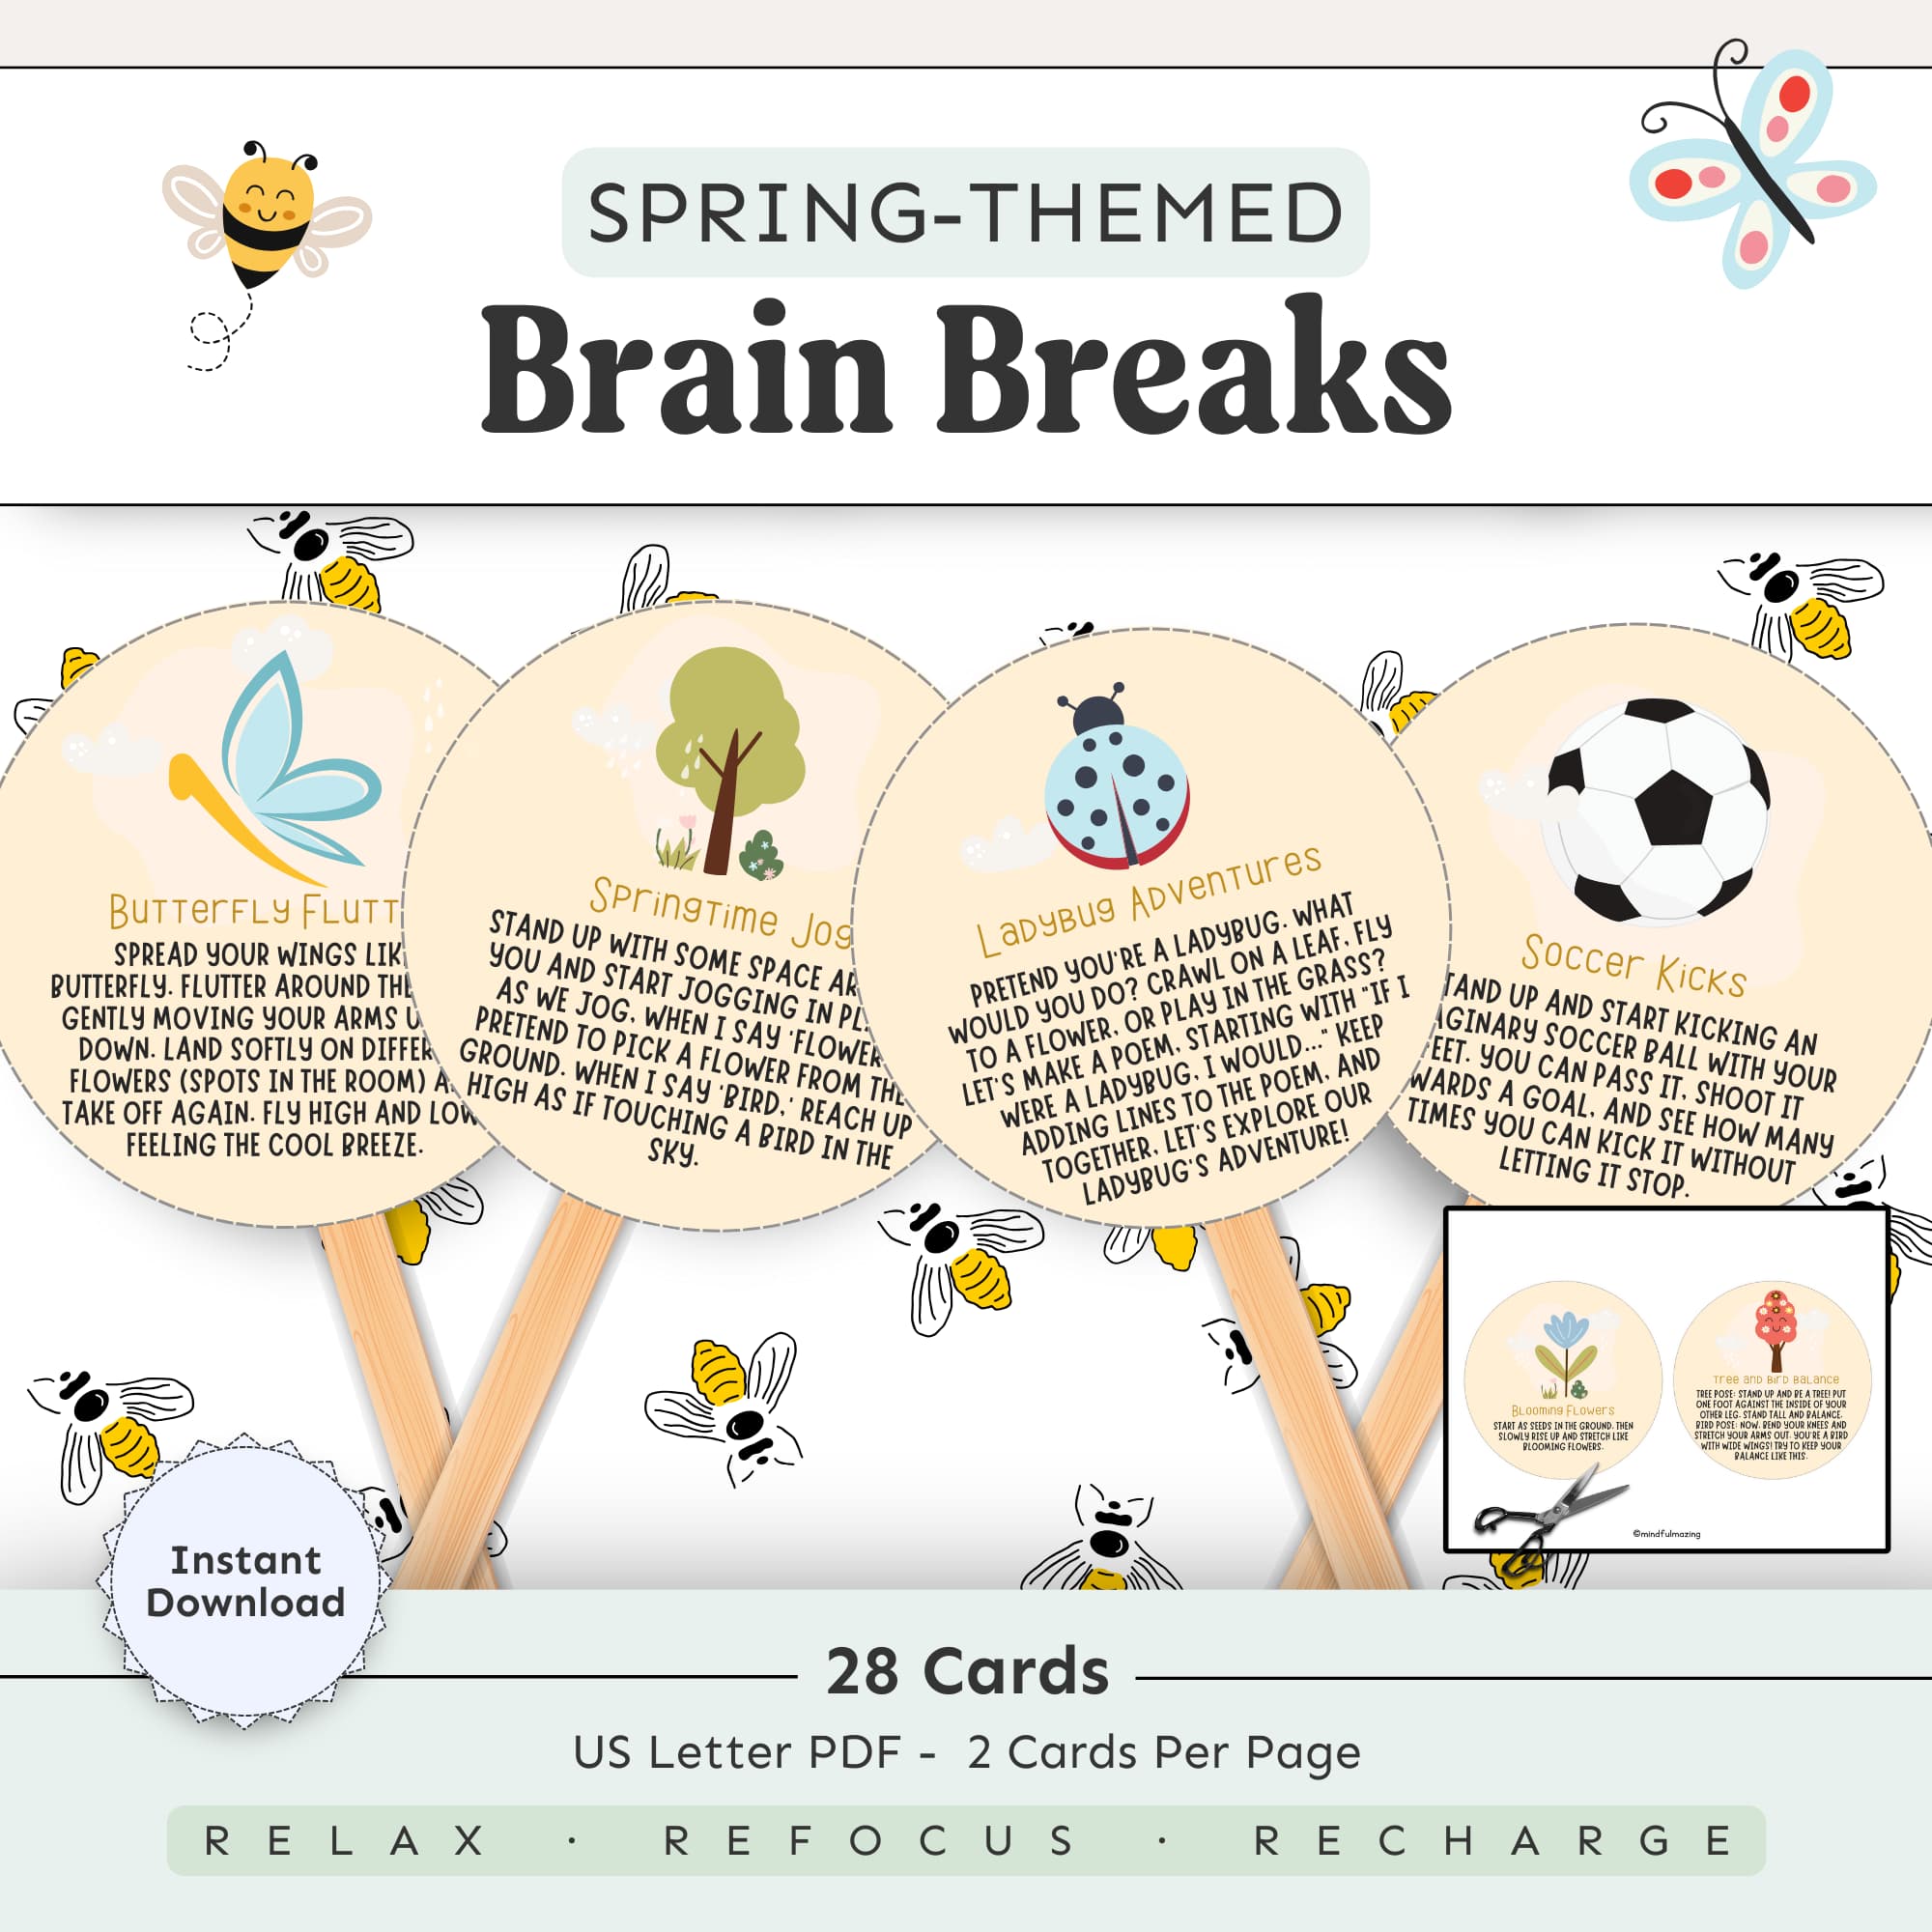 Spring-themed Brain Breaks